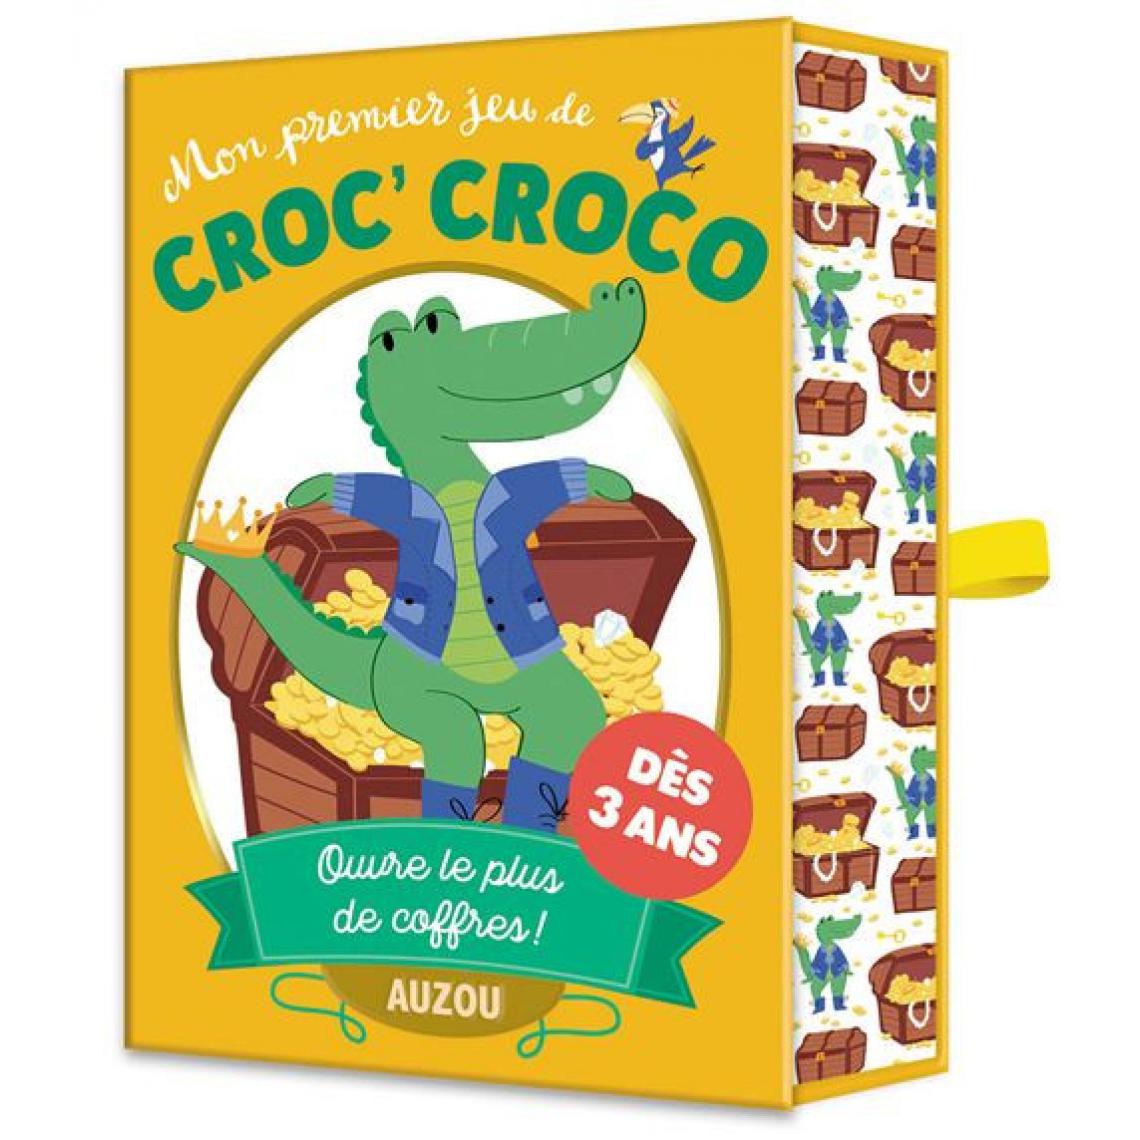 Editions Auzou - Mon premier jeu de croc croco - Jeux de cartes